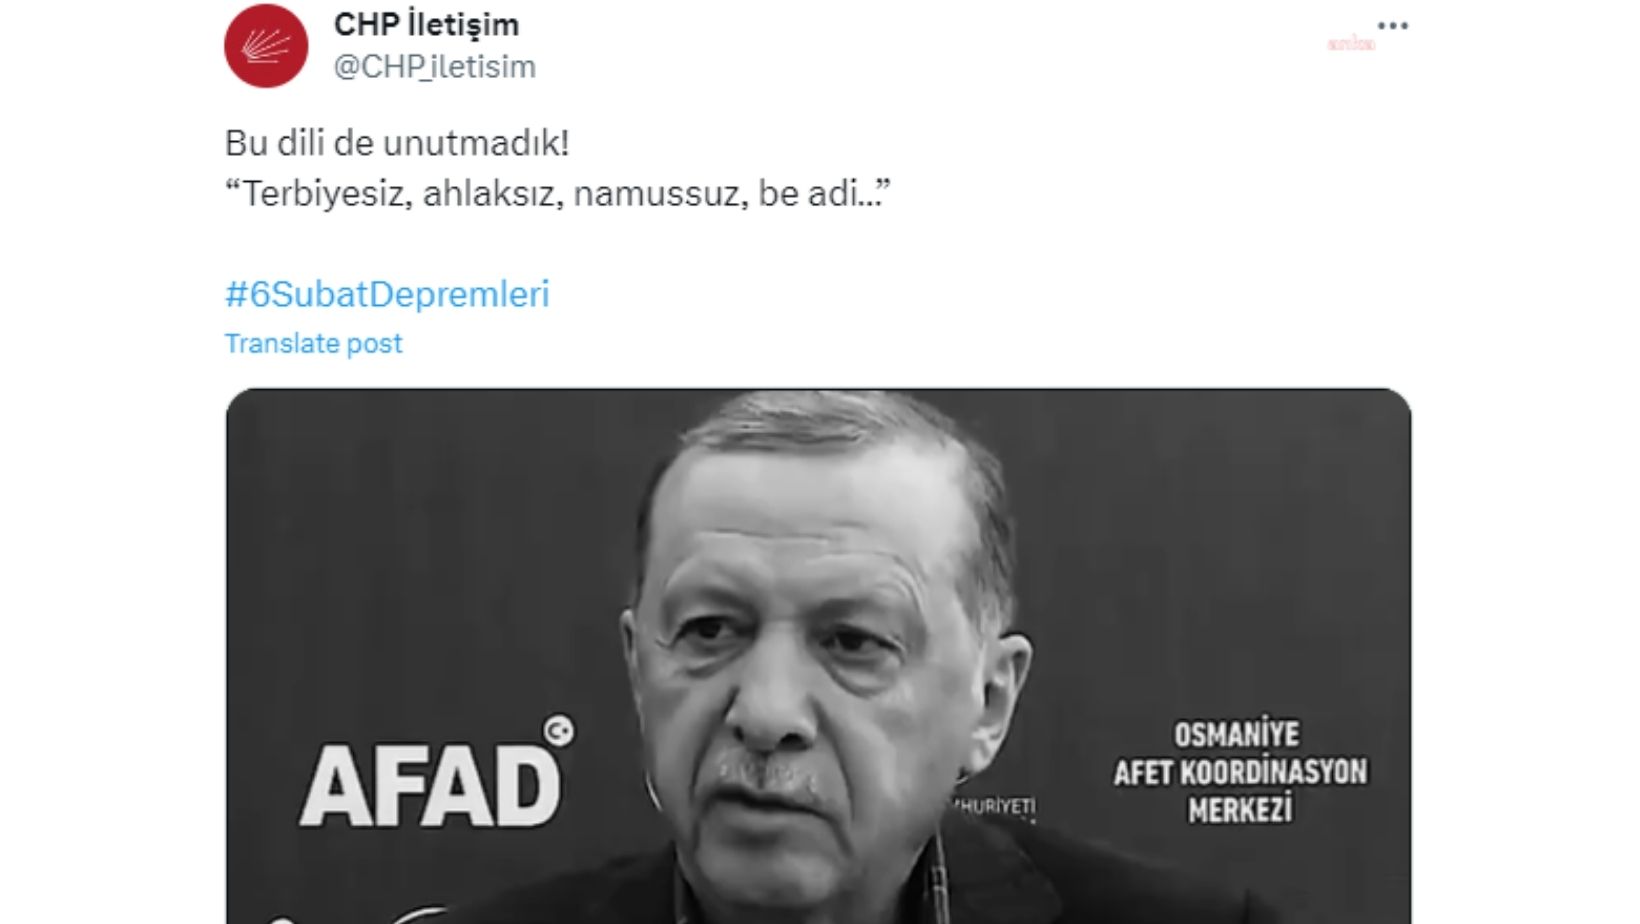 CHP’nin resmi "iletişim" hesabında Erdoğan’ın “terbiyesiz, ahlaksız…” sözleri hatırlatıldı